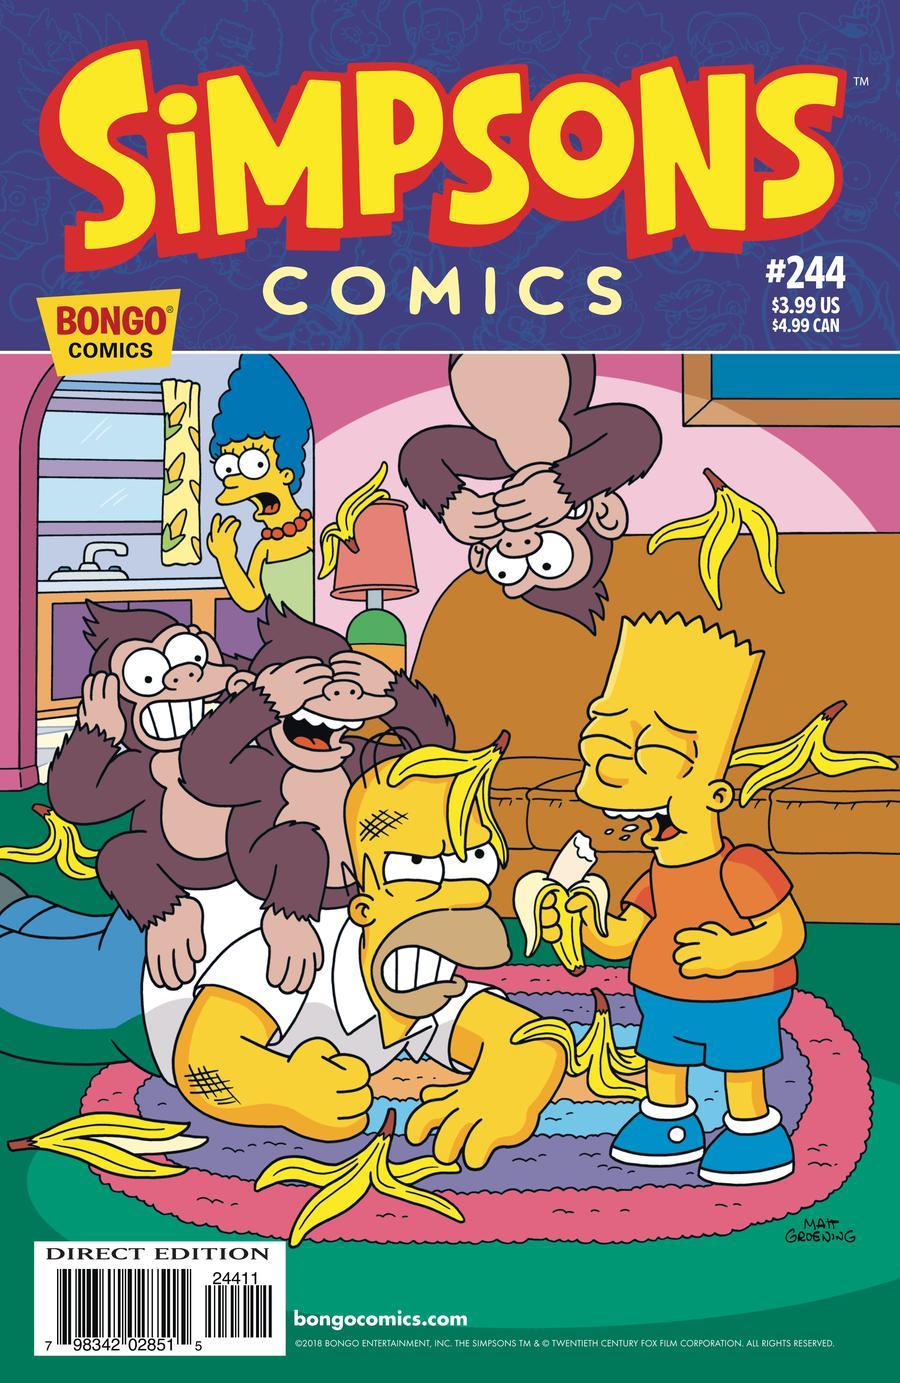 Simpsons Comics Vol. 1 #244